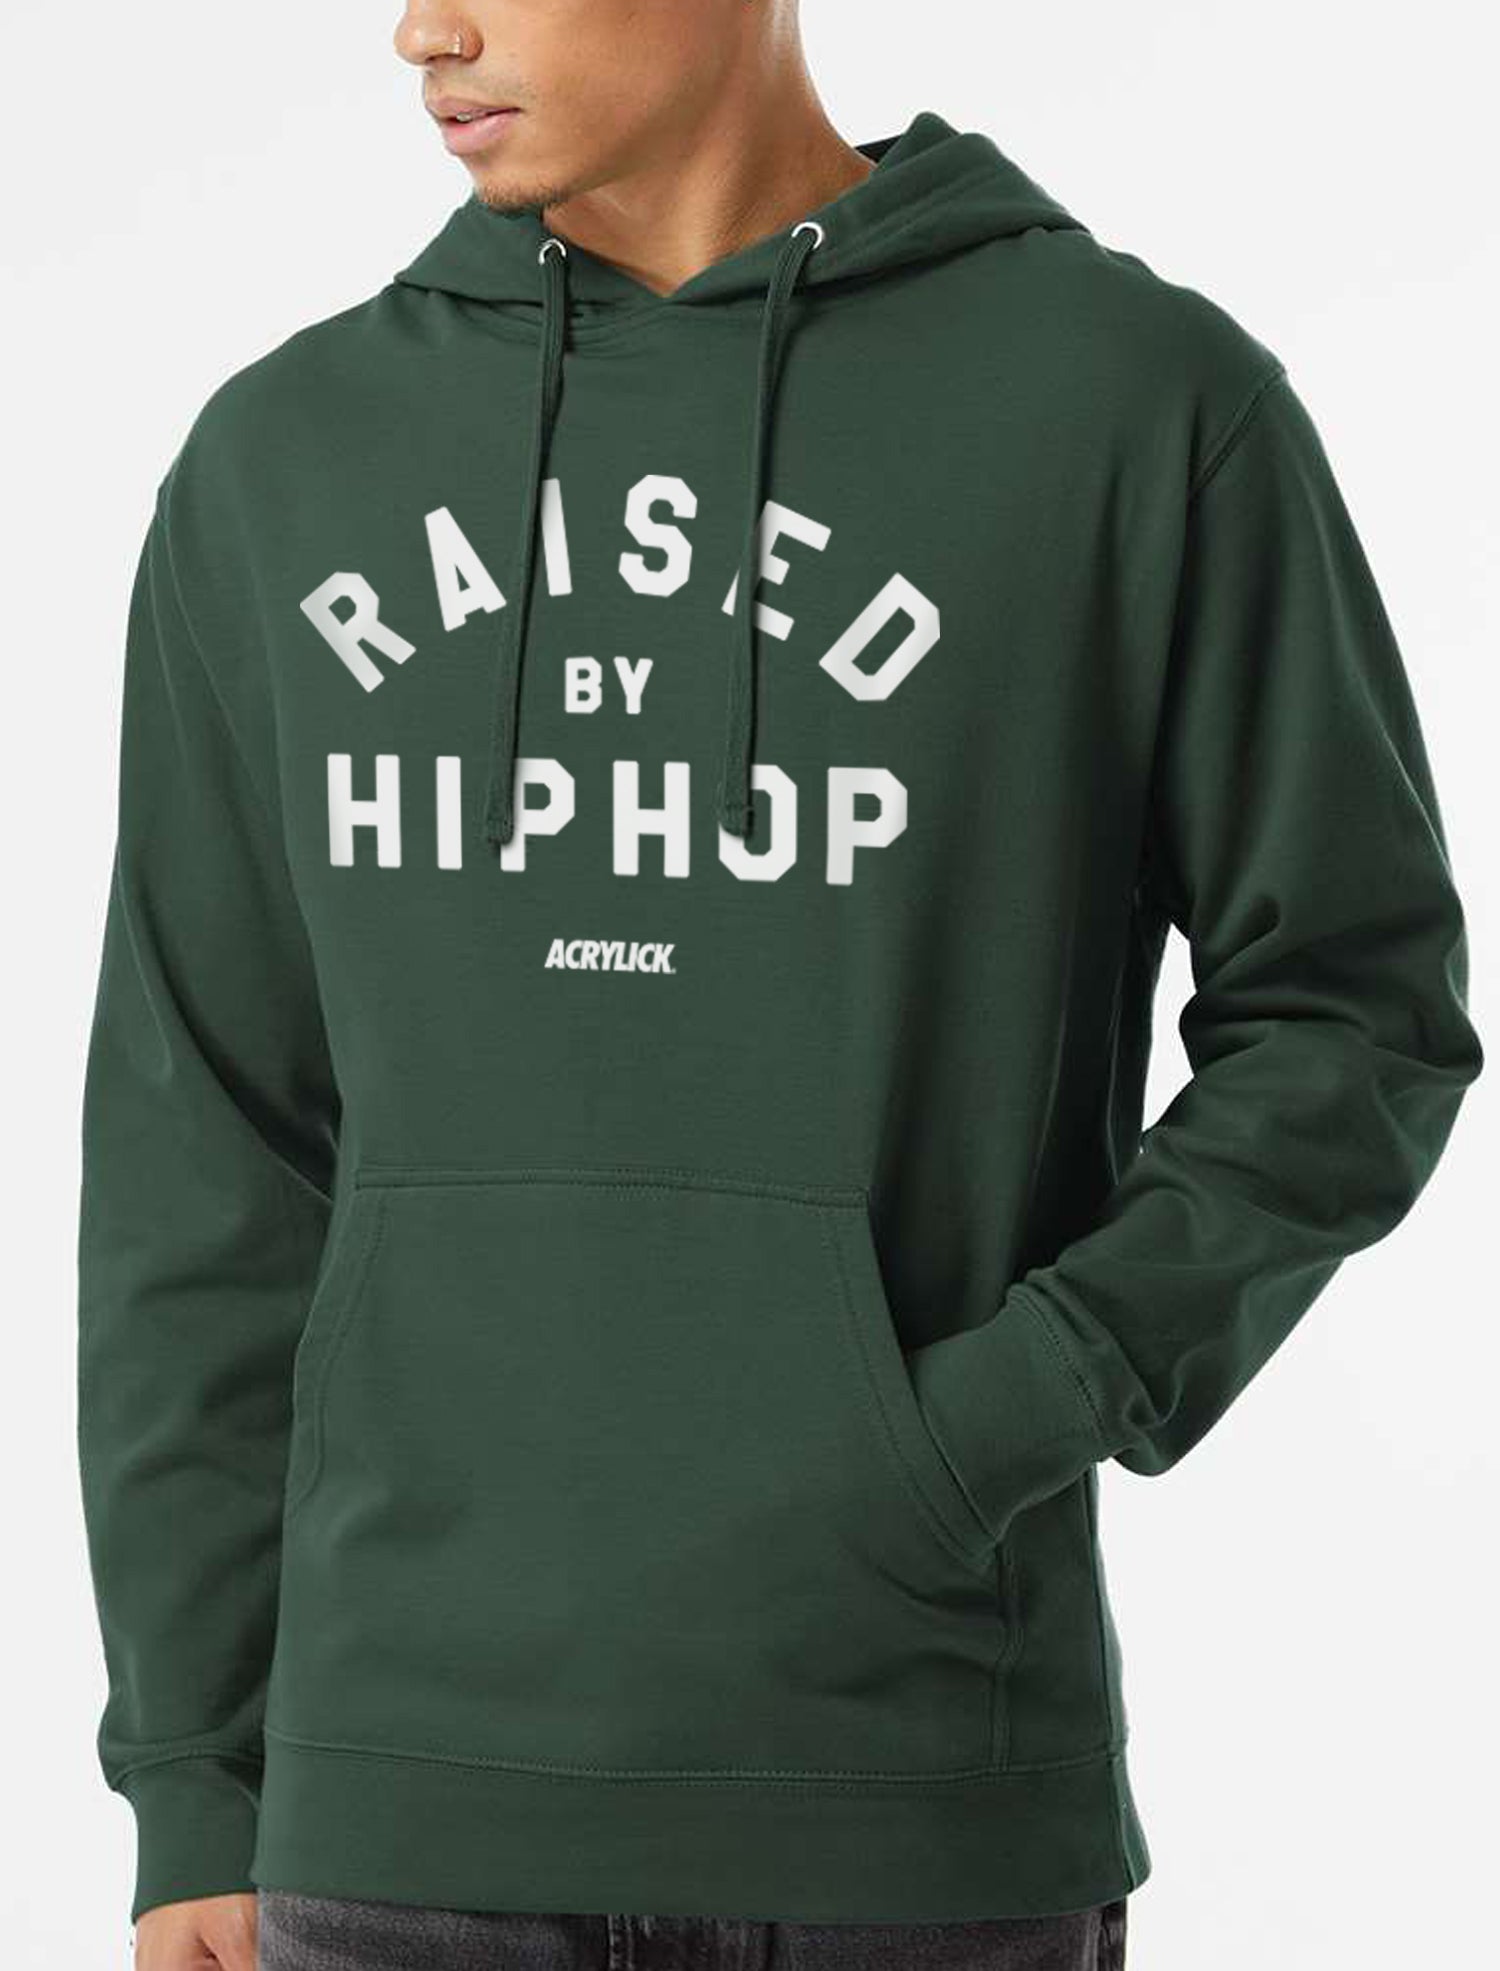 Raised By Hip Hop Hoodie